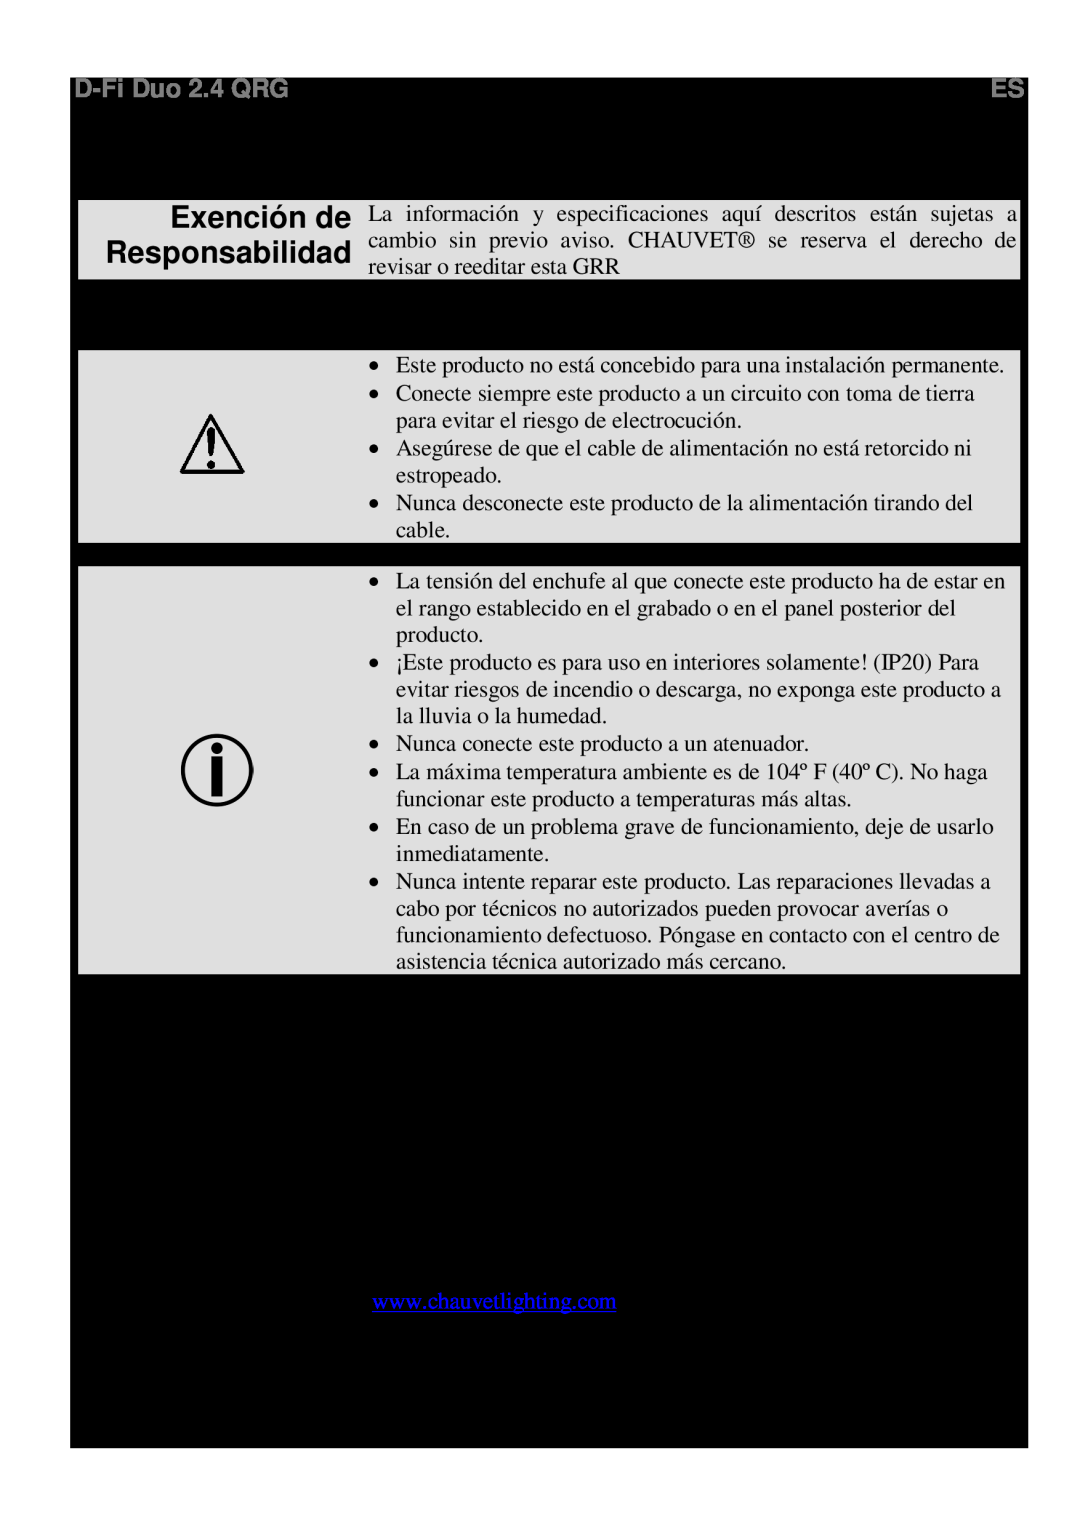 Chauvet RX, TX Acerca de Esta Guía, Notas de Seguridad ¿Qué va Incluido? Para Empezar, Descripción del Producto Contacto 